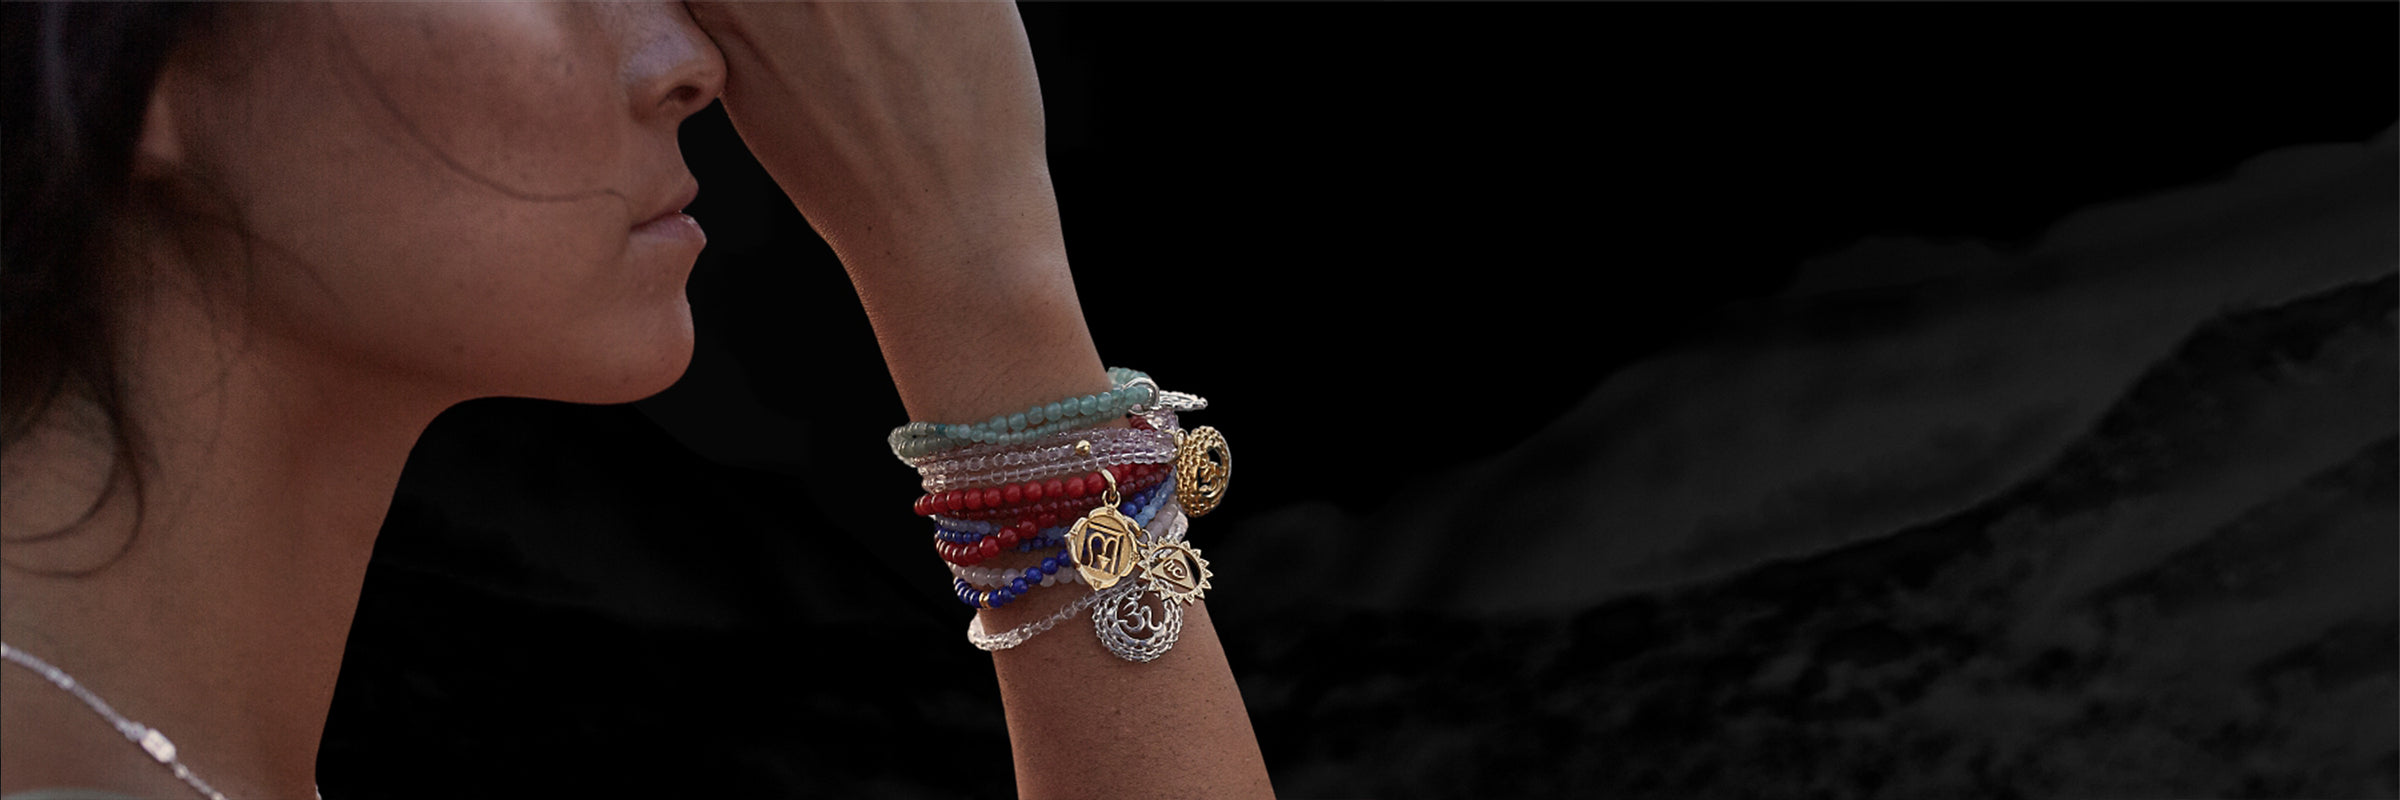 Chakra Armbänder mit Chakra Symbolen der 7 Hauptchakren| Schmuck mit spiritueller Bedeutung | Sterling Silber hochwertig vergoldet mit Edelsteinen akzentuiert | ETERNAL BLISS